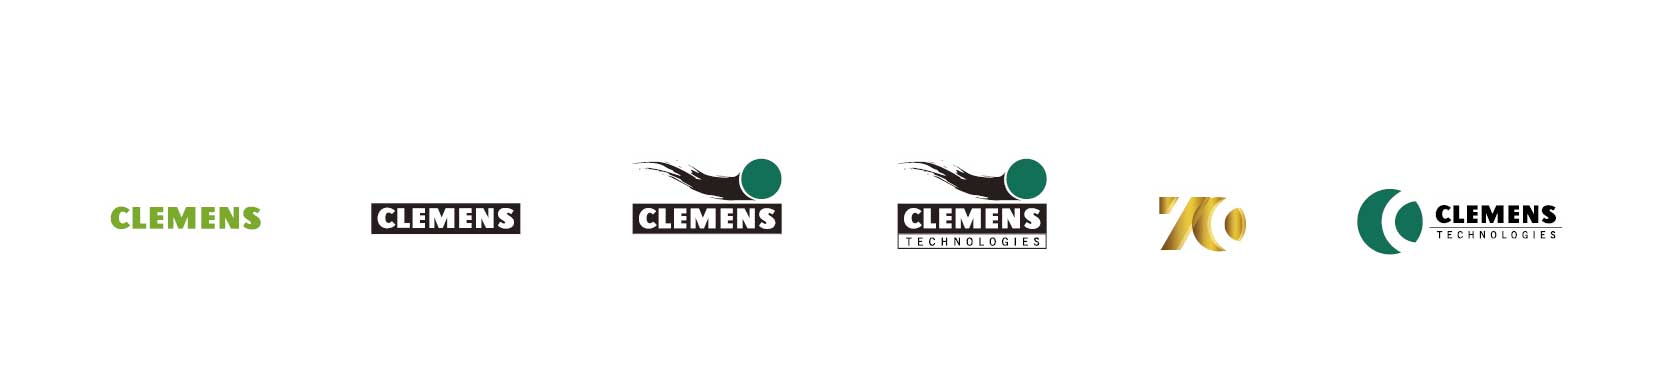 CLEMENS Technologies Développement de logo